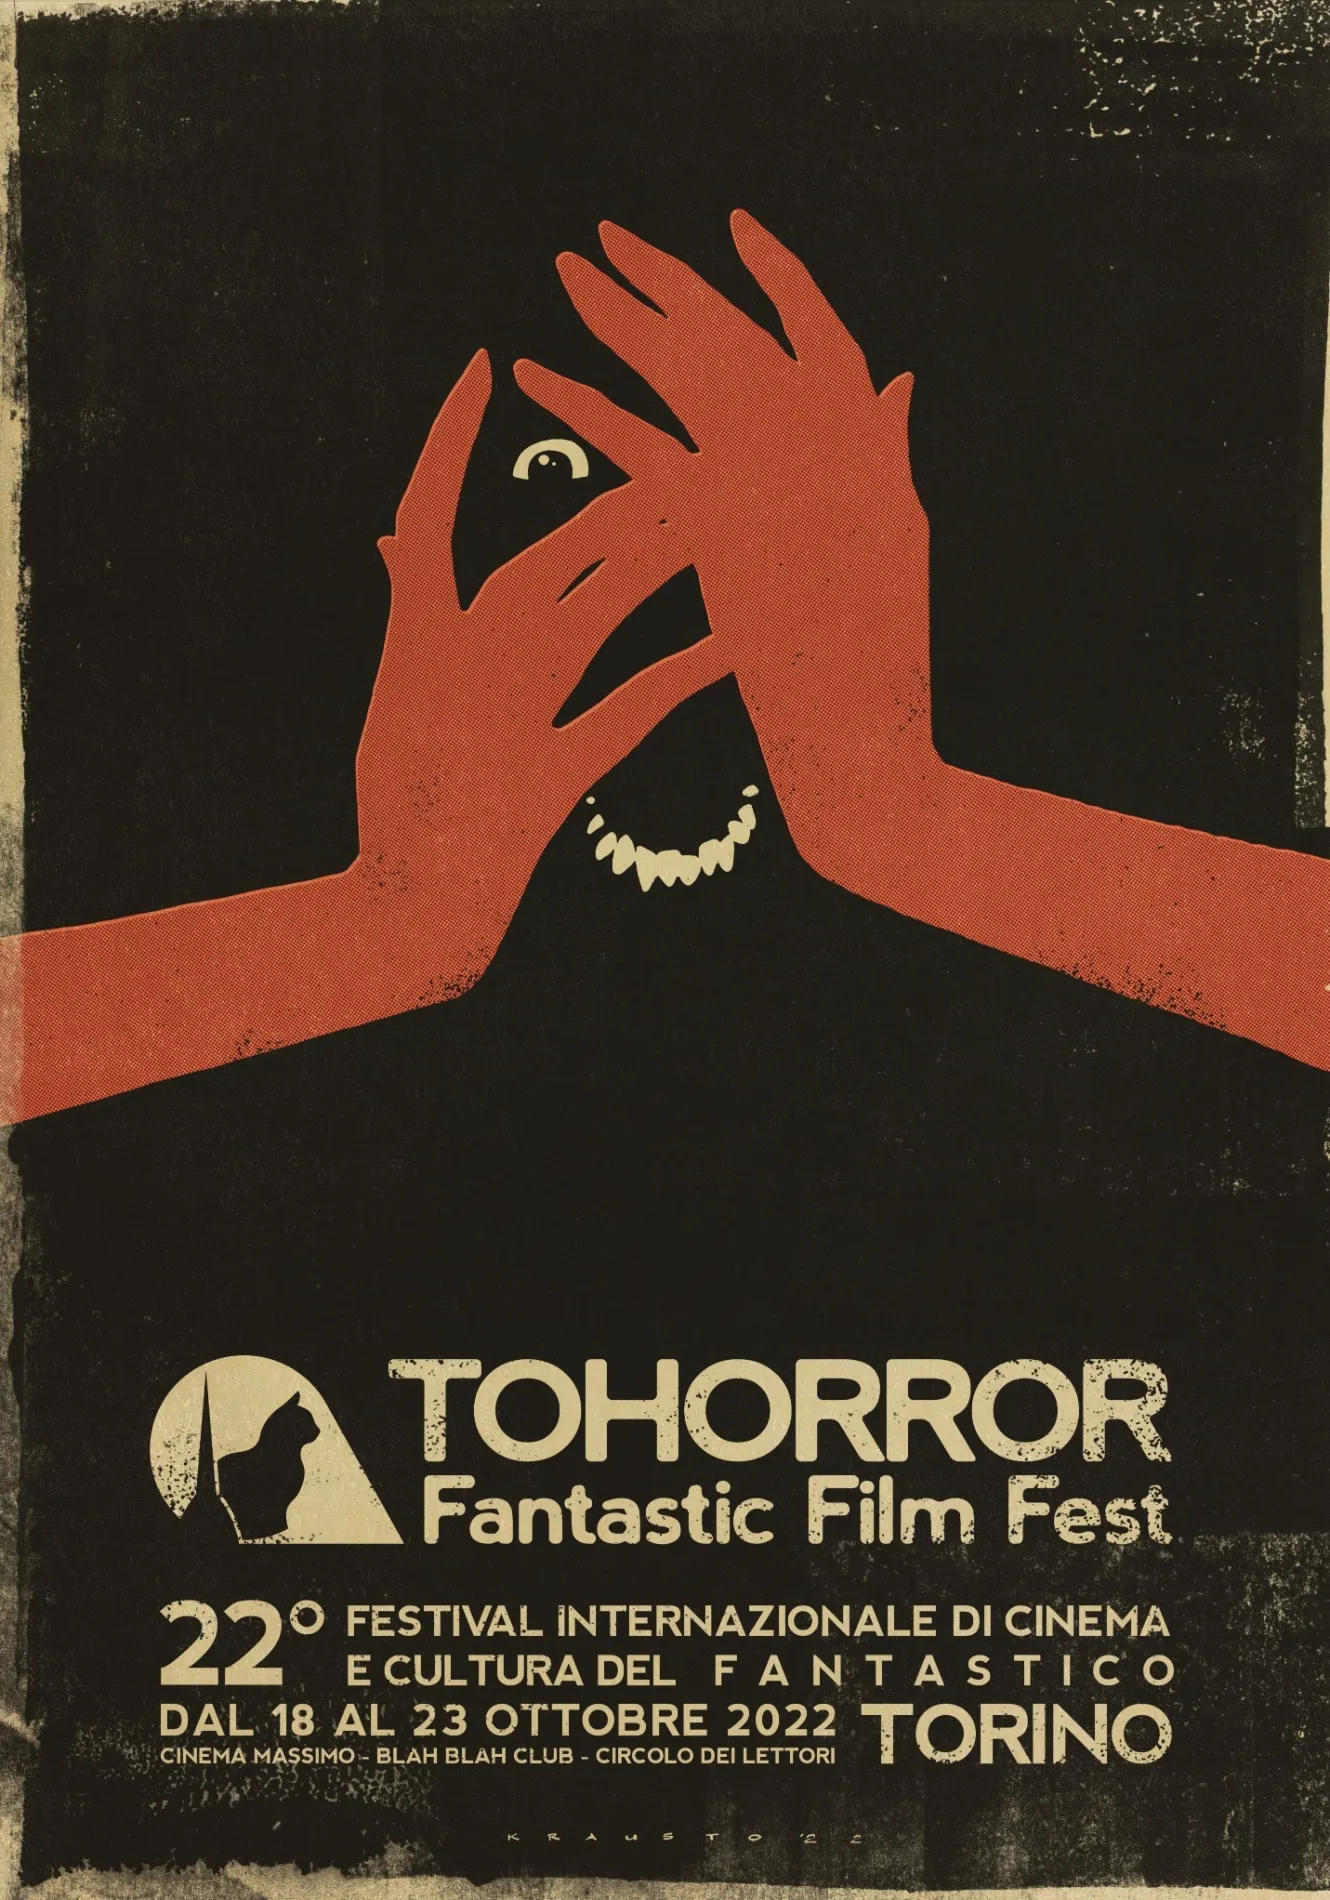 [NEWS] I premi del TOHorror Fantastic Film Fest 2022